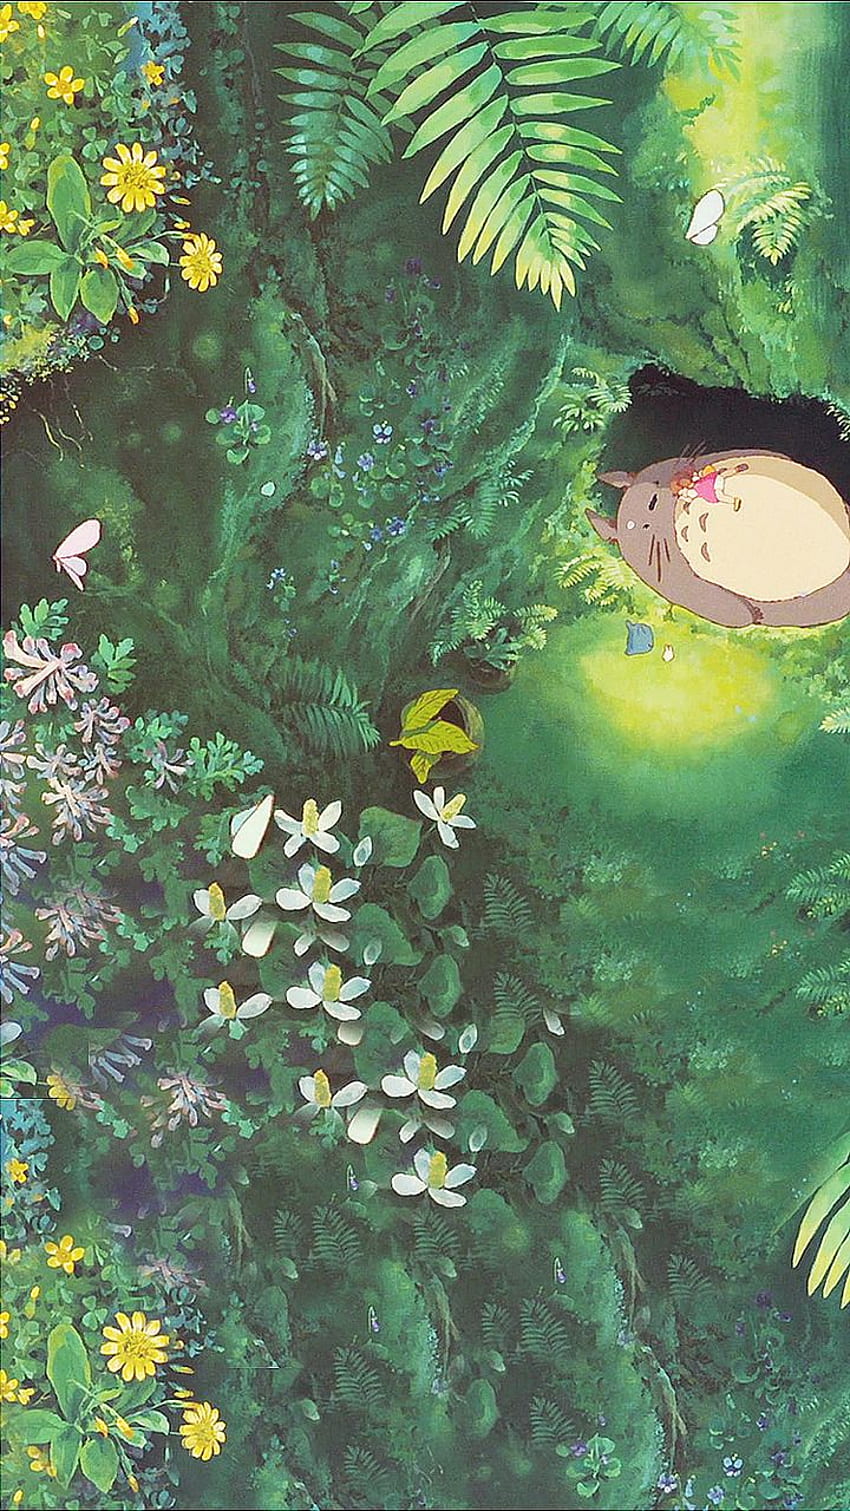 Hoa làm nên Studio Ghibli đậm chất cổ tích. Hình ảnh liên quan đến từ khóa này chắc chắn sẽ giúp bạn đắm say trong sắc thái tinh tế đến lạ kỳ của những đóa hoa cổ điển.